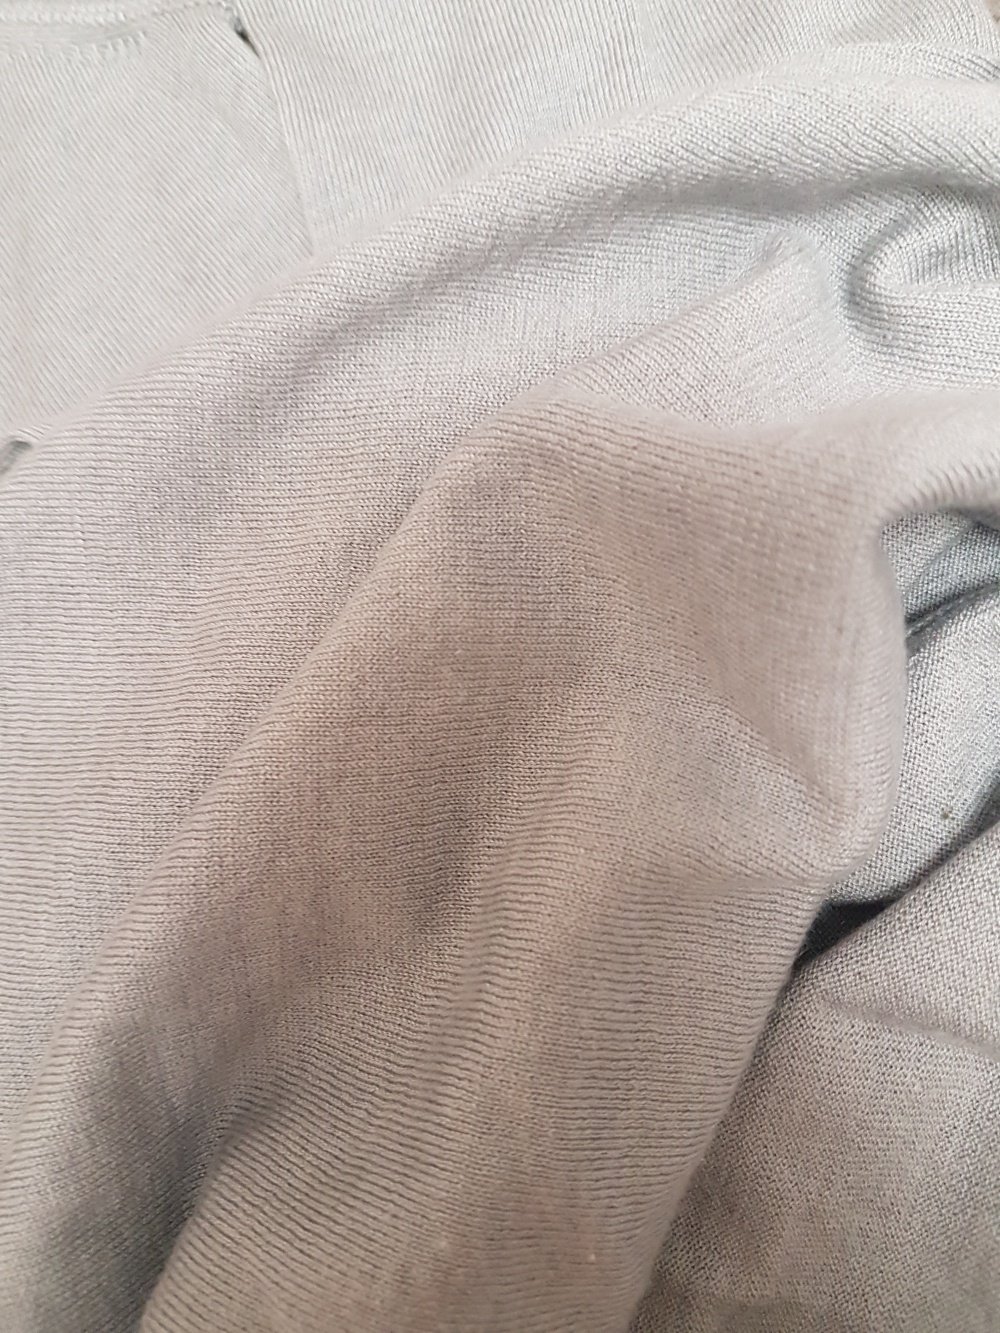 Свитер Burberry из шелка и кашемира, размер S (42-44)